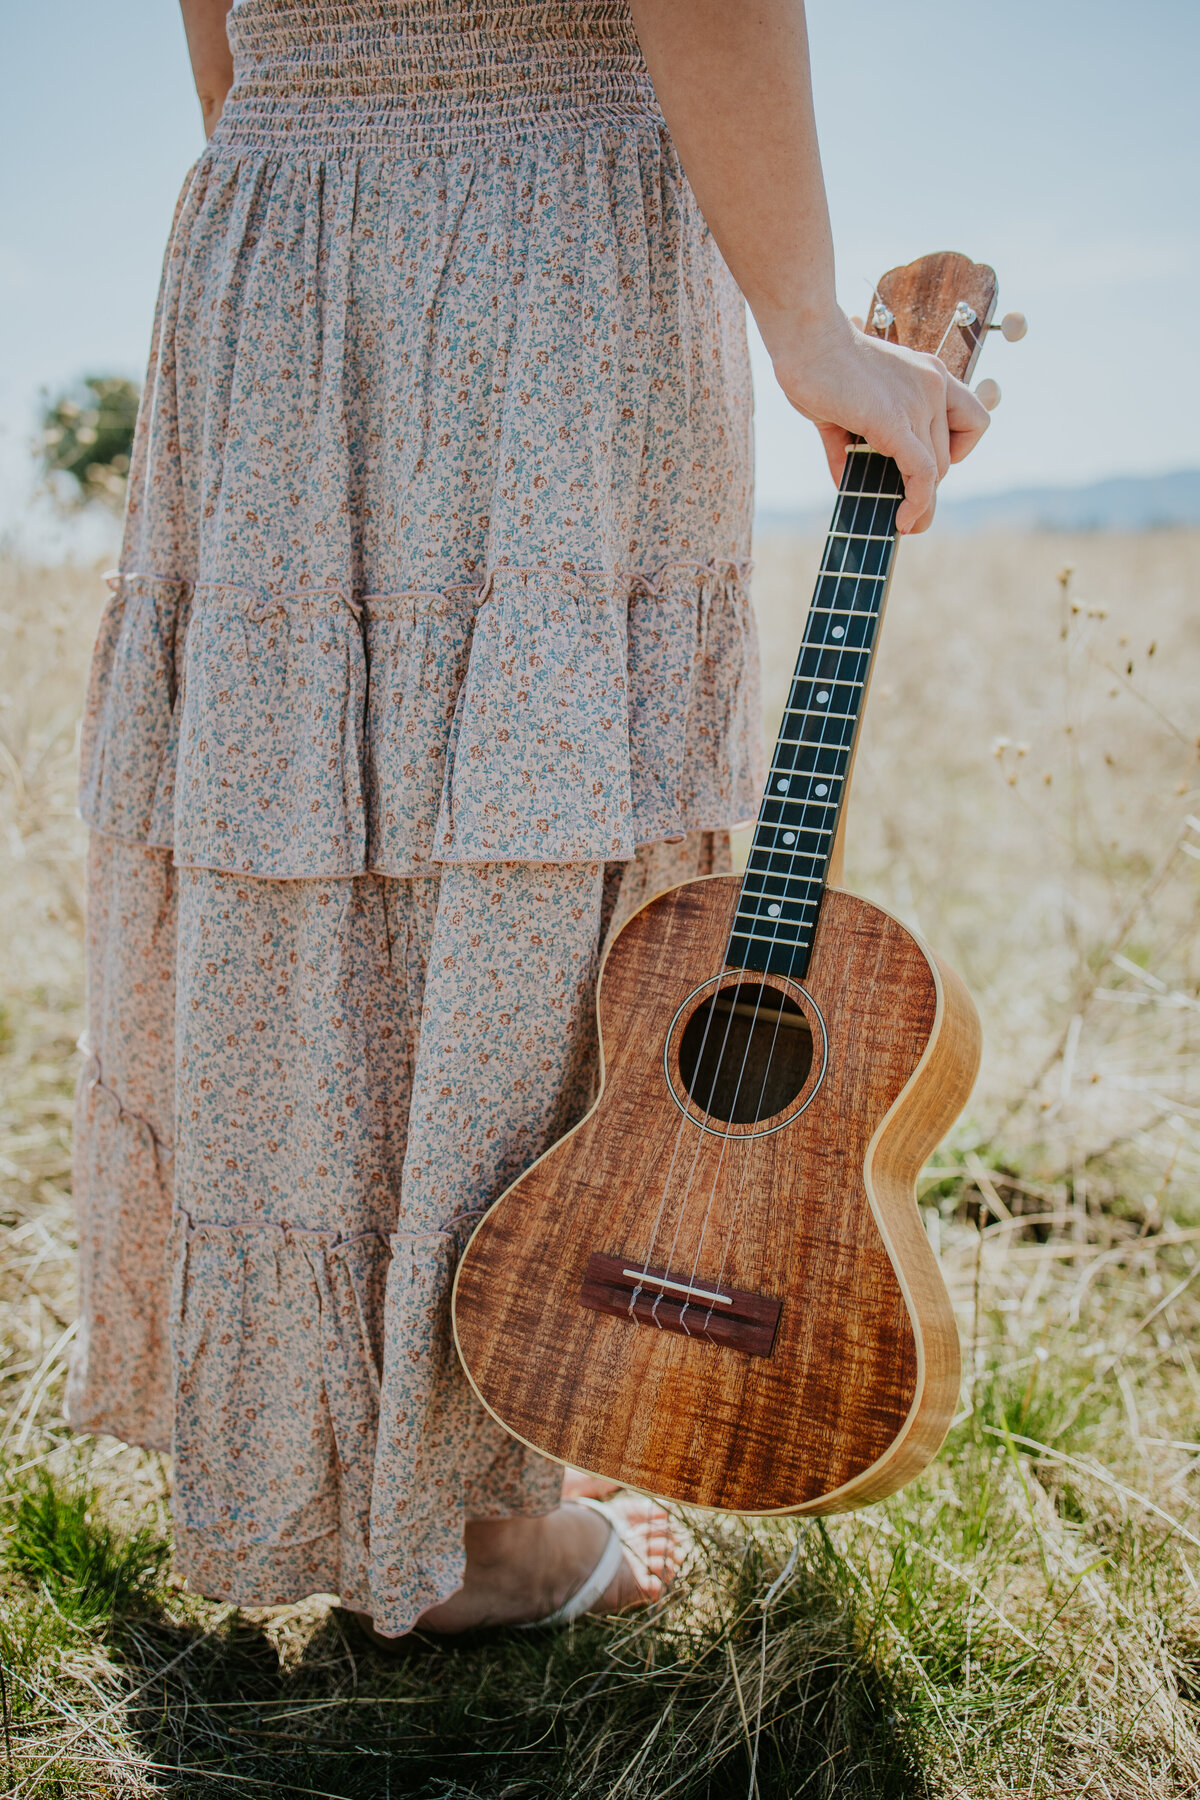 Shot of girl wearing skirt from waist down holding ukulele.